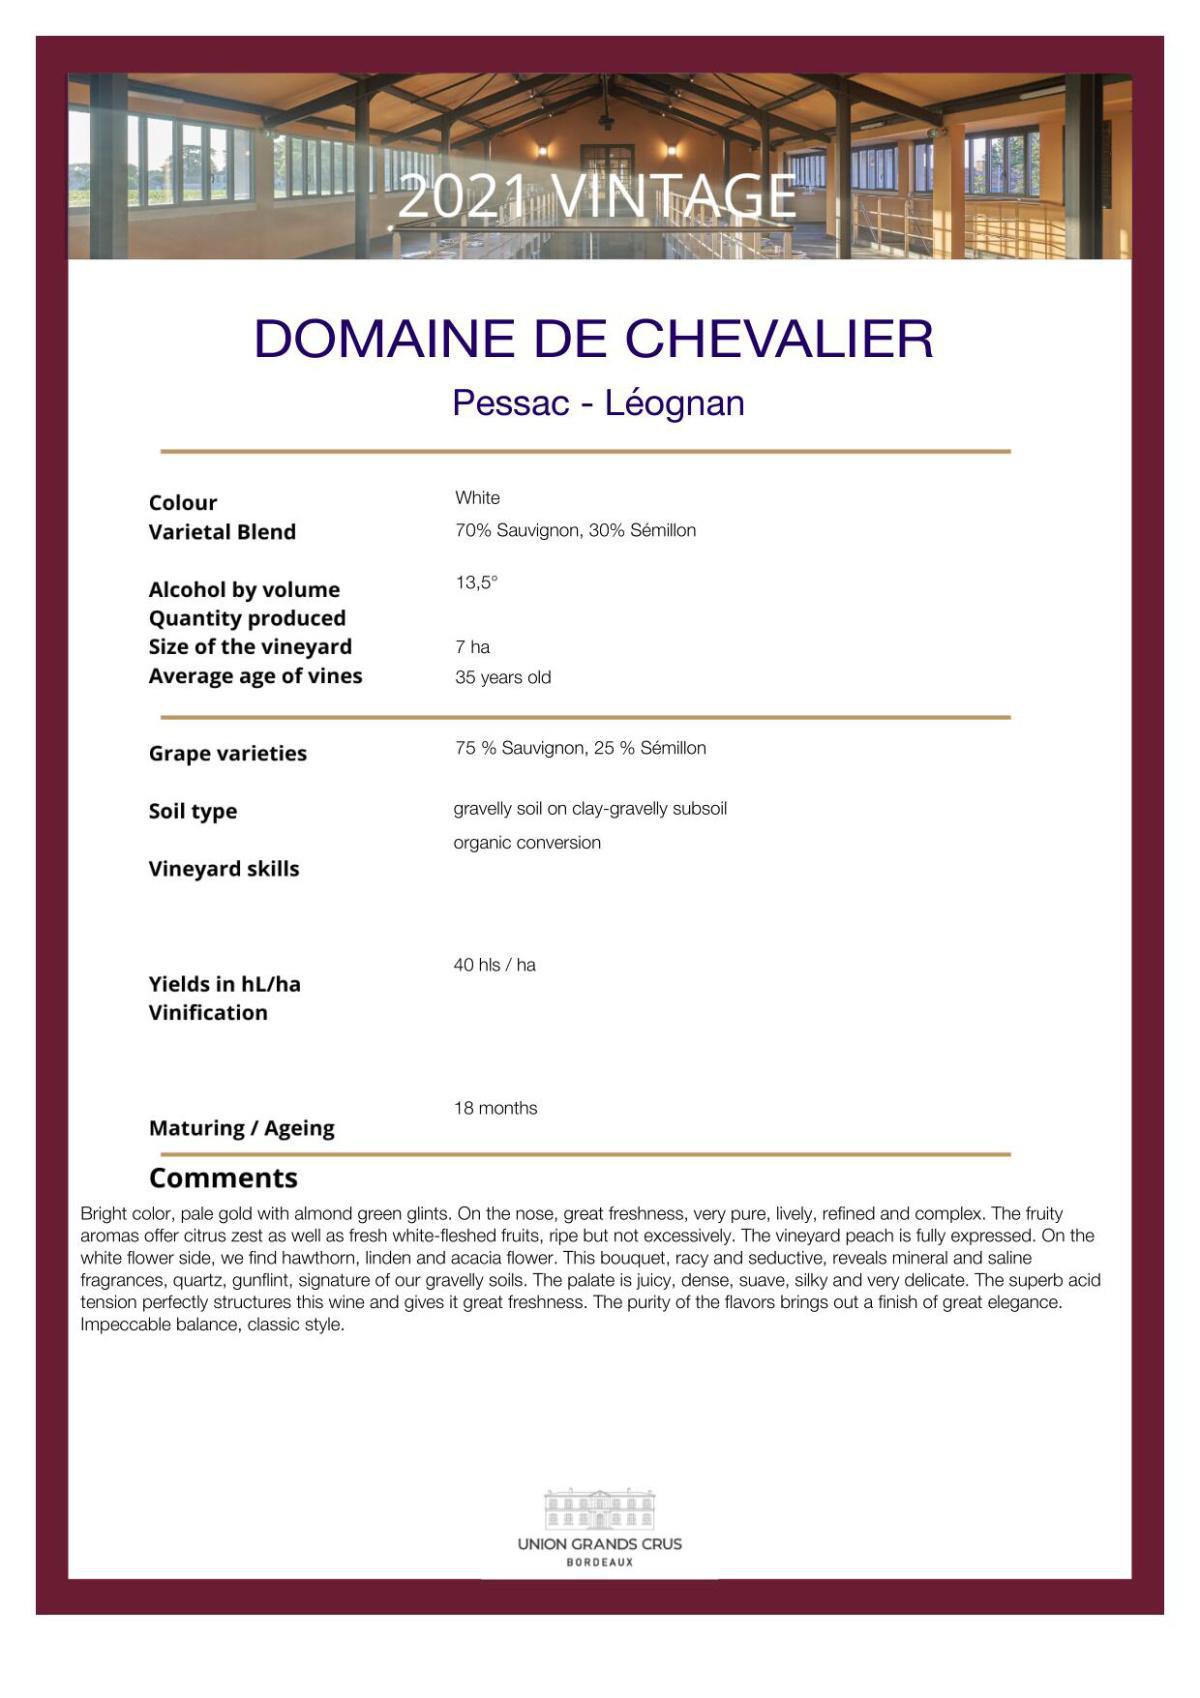 Domaine de Chevalier - White